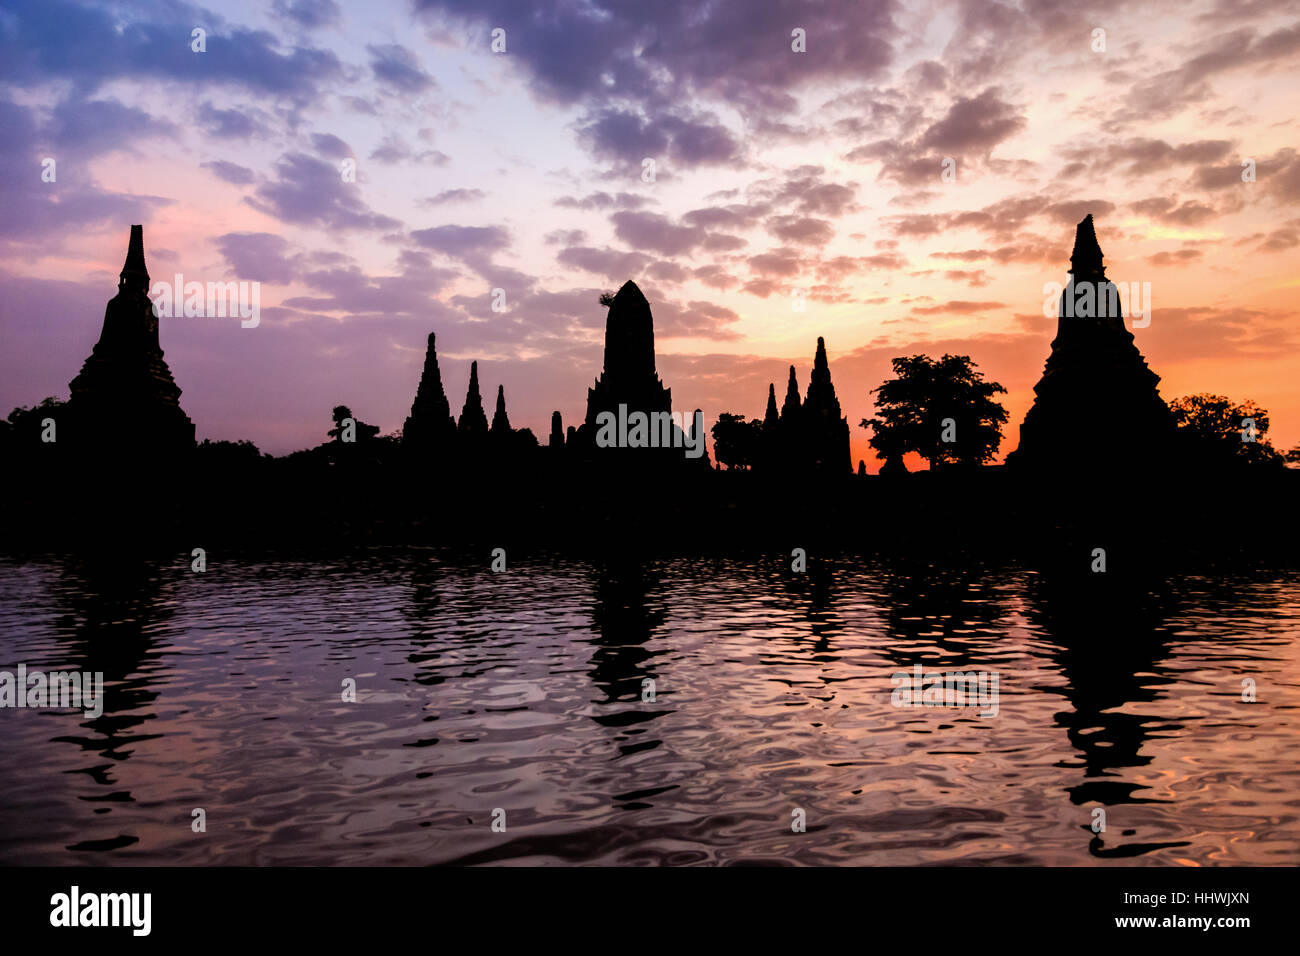 Silueta de Wat Chaiwatthanaram horizontal durante la puesta de sol junto al río Chao Phraya es antiguo templo famosa atracción religiosa de Ayutthaya Foto de stock